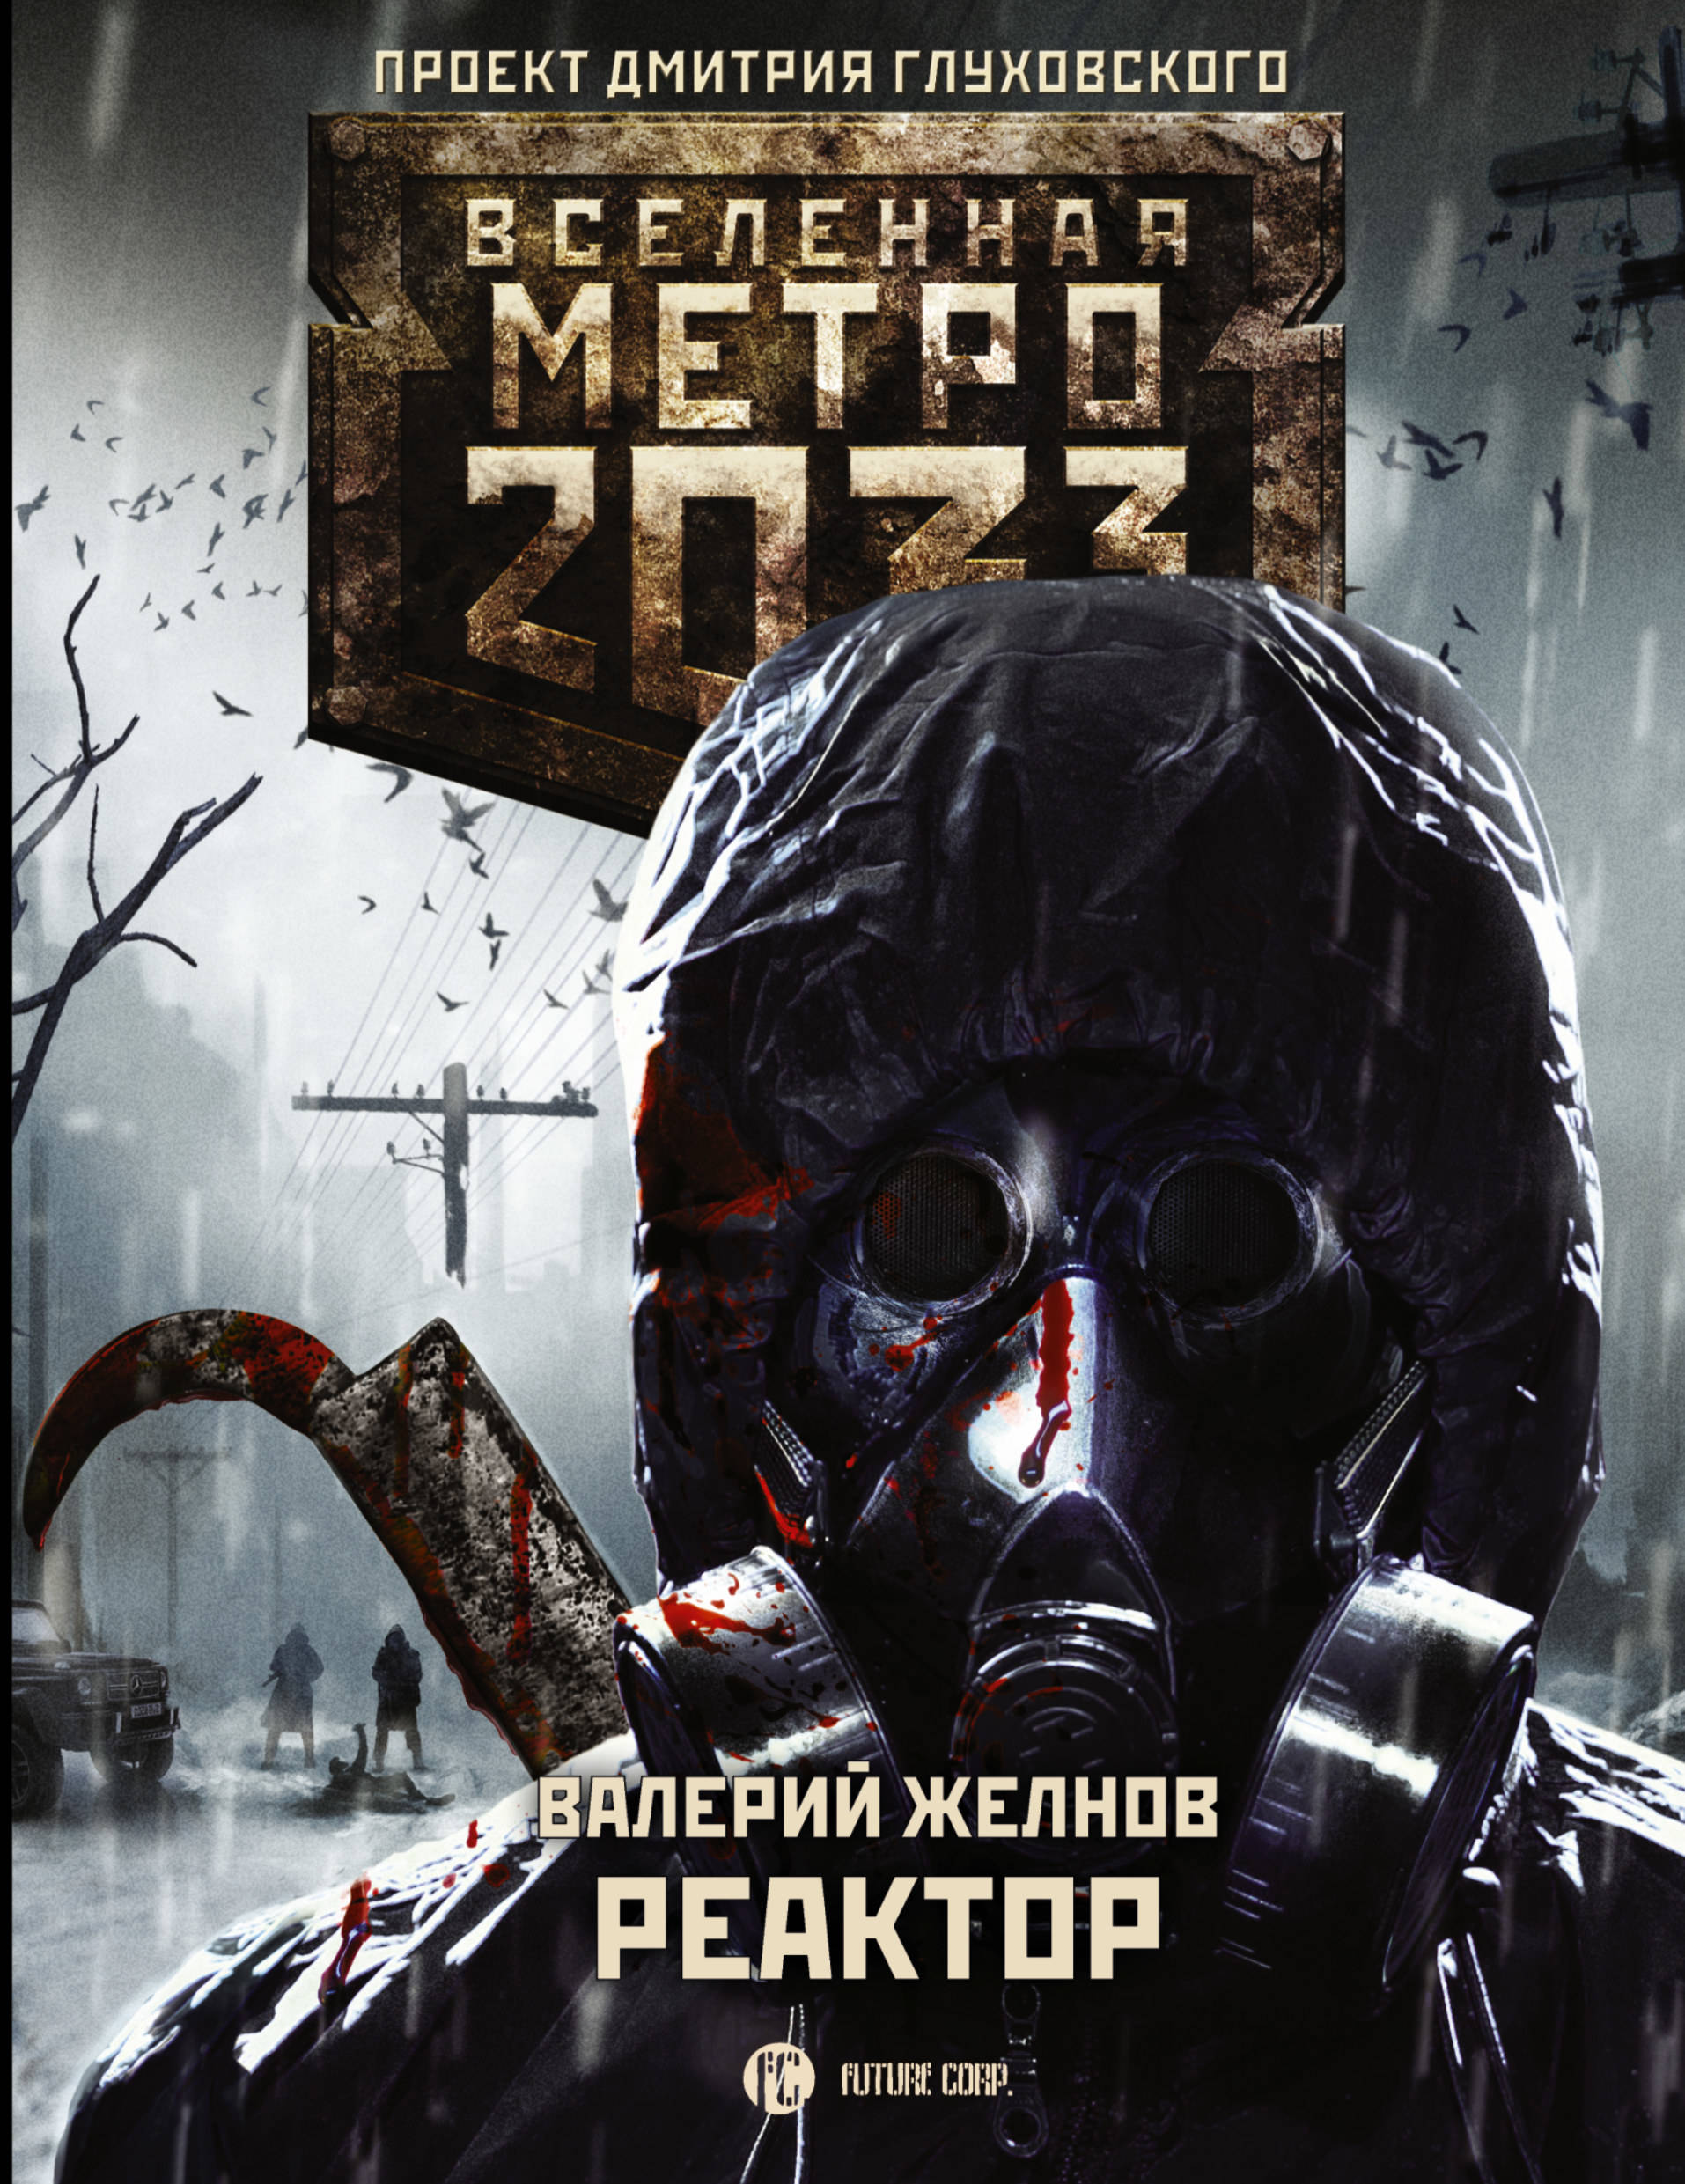 Метро 2033 книга полностью. Вселенная метро 2033 обложки. Вселенная метро 2033 реактор. Метро 2033 реактор книга.